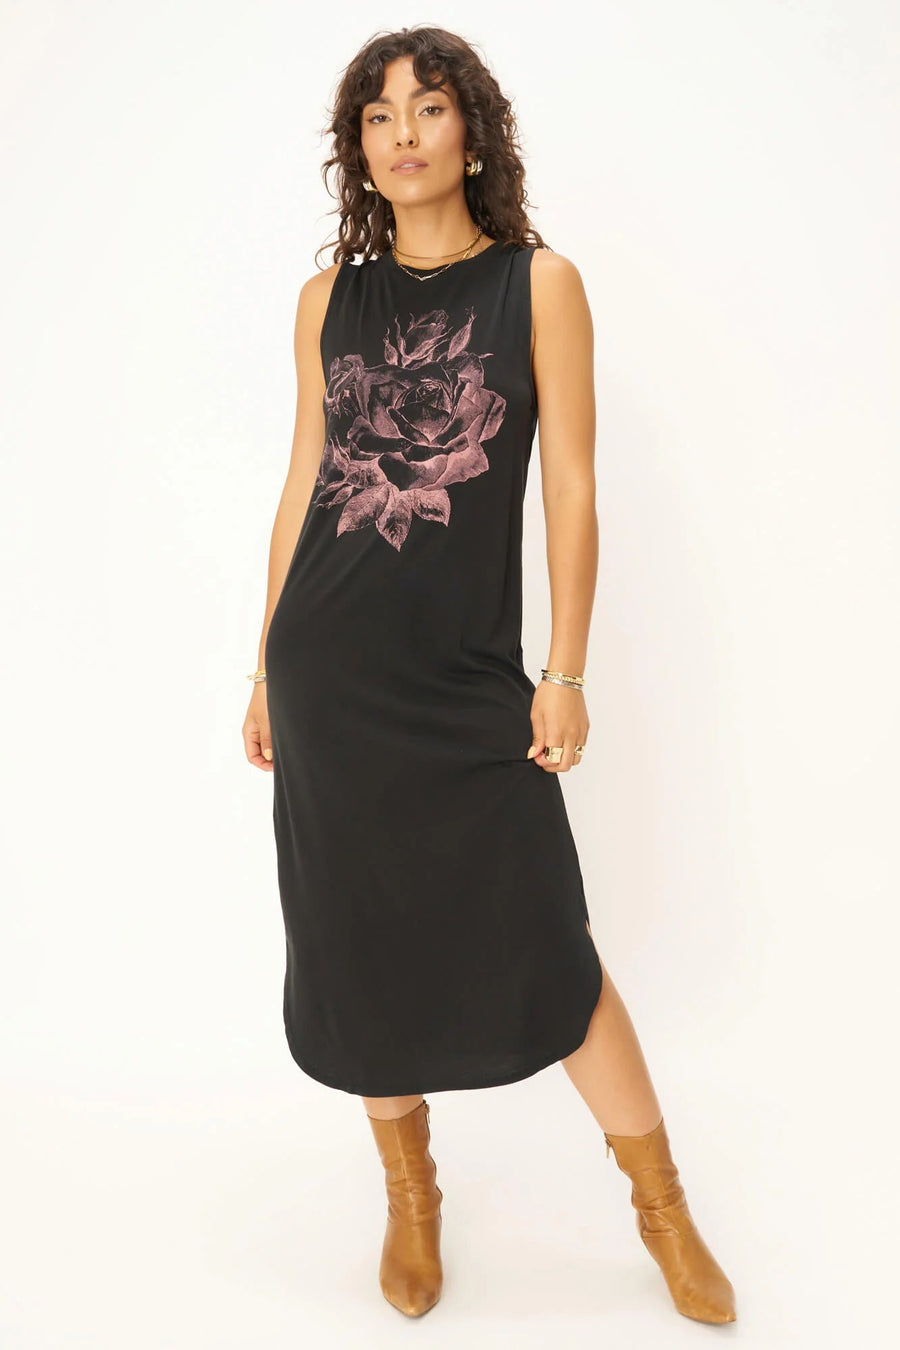 ROSES TANK DRESS - DW BLACK - Blue Sky Fashions & Lingerie